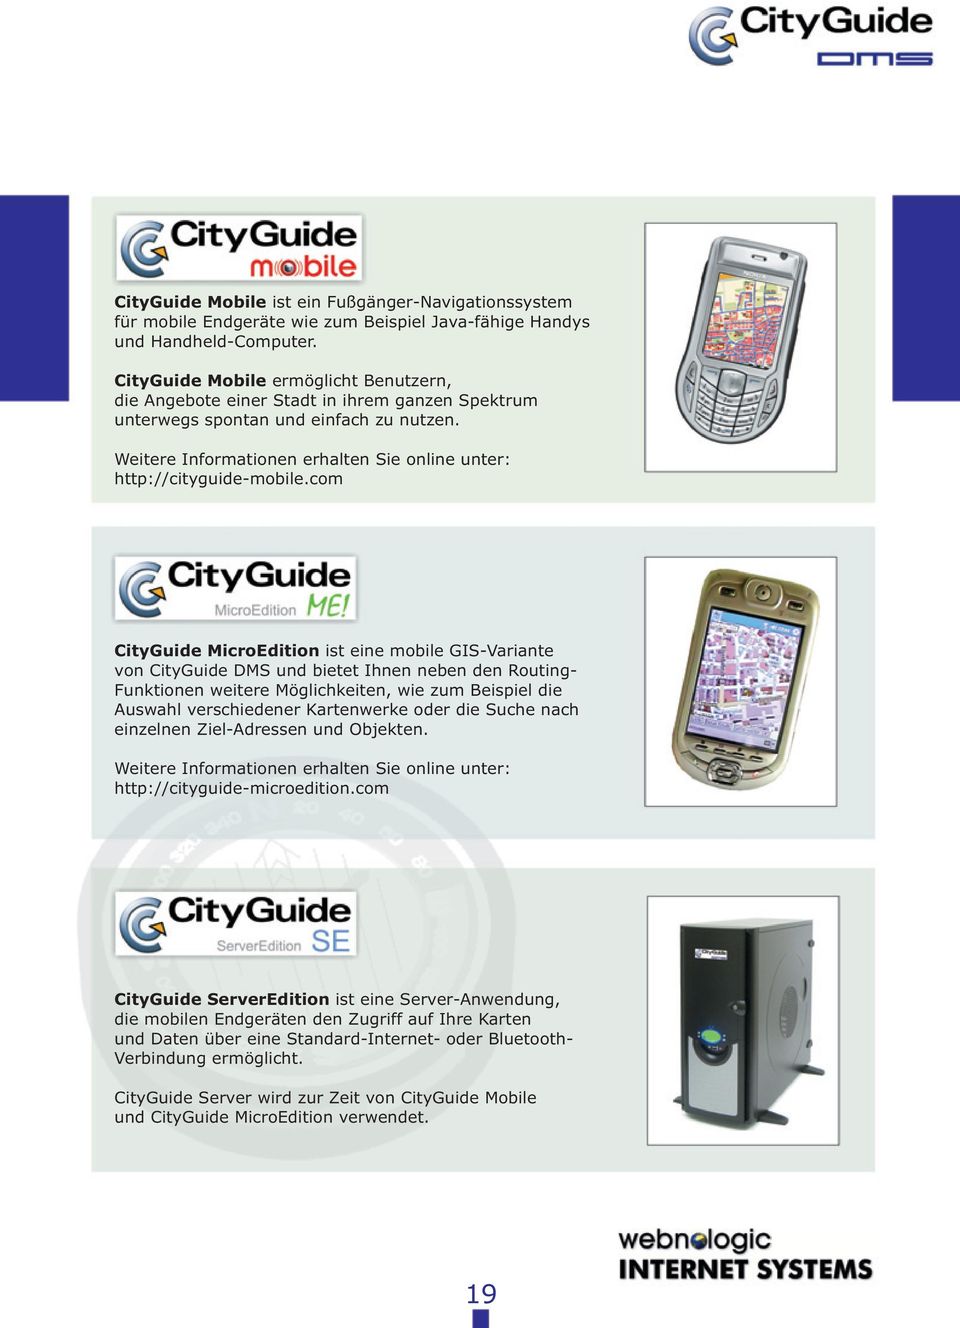 com CityGuide MicroEdition ist eine mobie GIS-Variante von CityGuide DMS und bietet Ihnen neben den Routing- Funktionen weitere Mögichkeiten, wie zum Beispie die Auswah verschiedener Kartenwerke oder